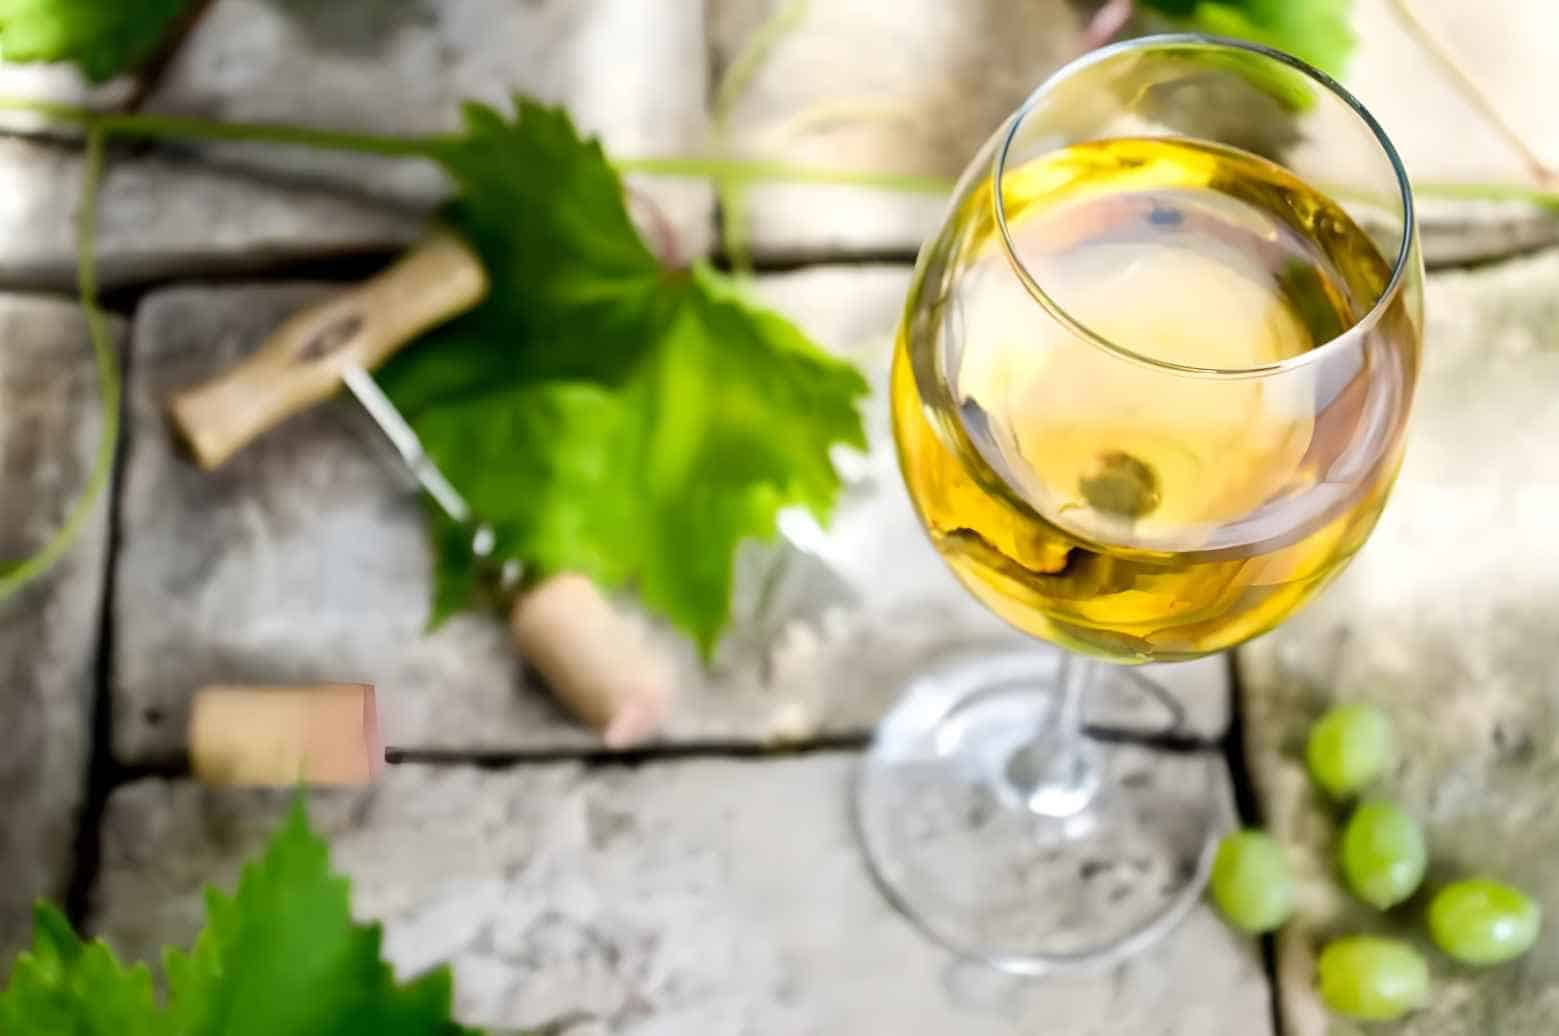 How to Enjoy the Sauvignon Blanc